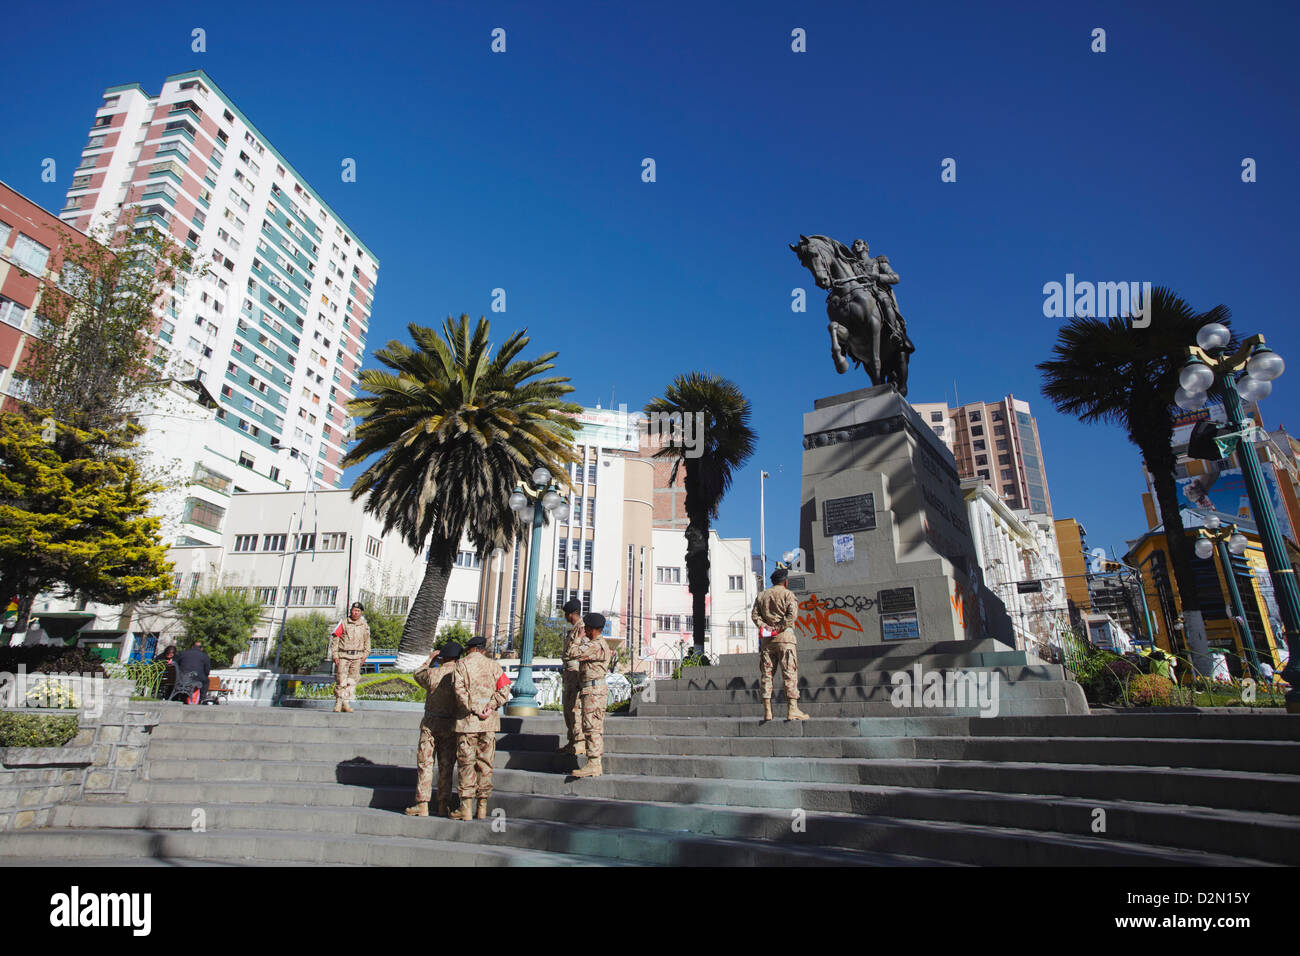 Statue of Antonio Jose de Sucre in Plaza del Estudiante, La Paz, Bolivia, South America Stock Photo